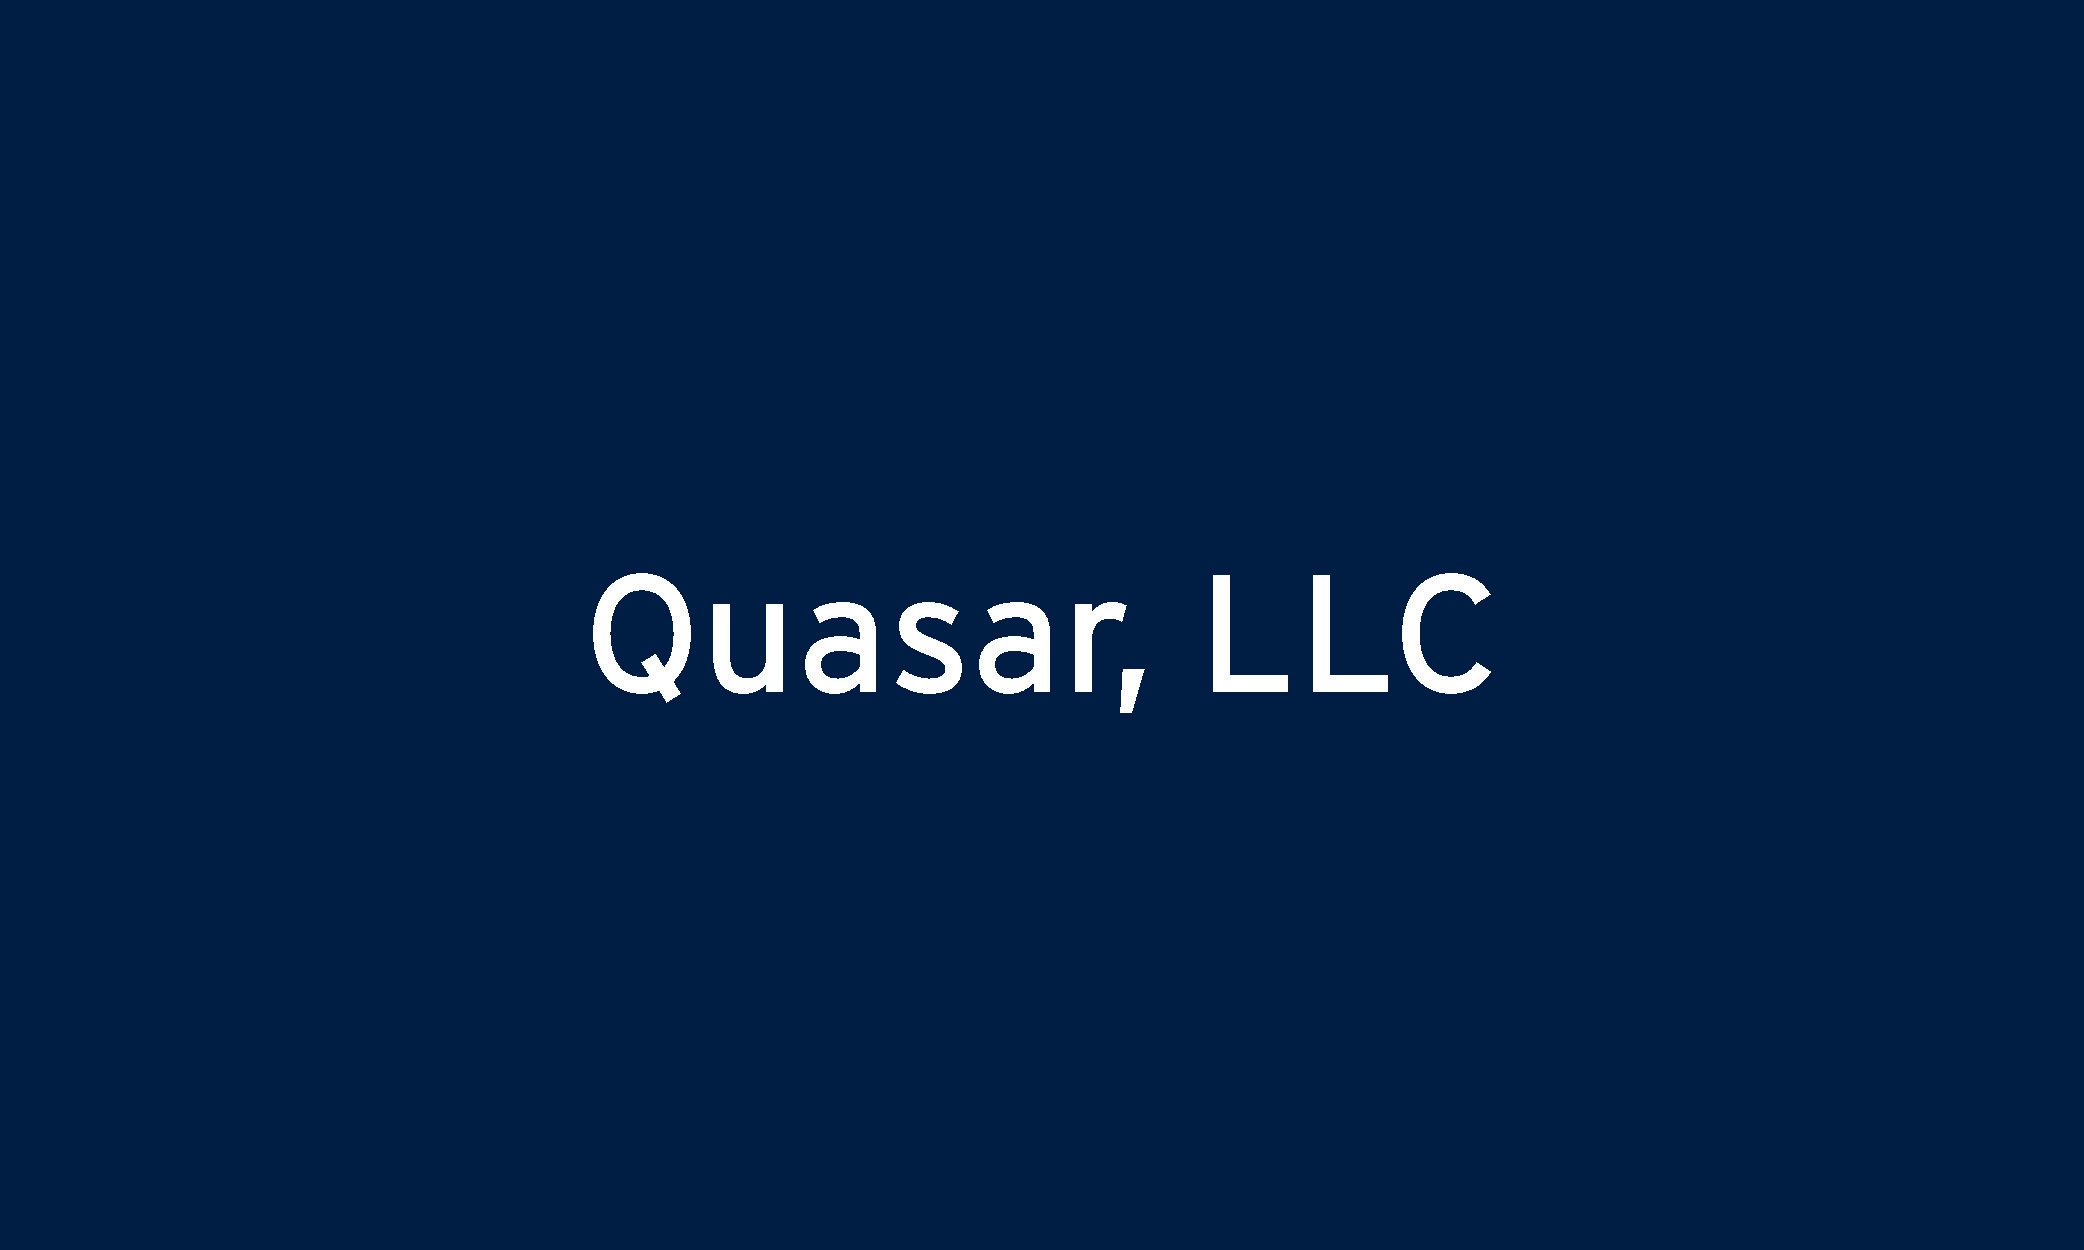 Quasar, LLC